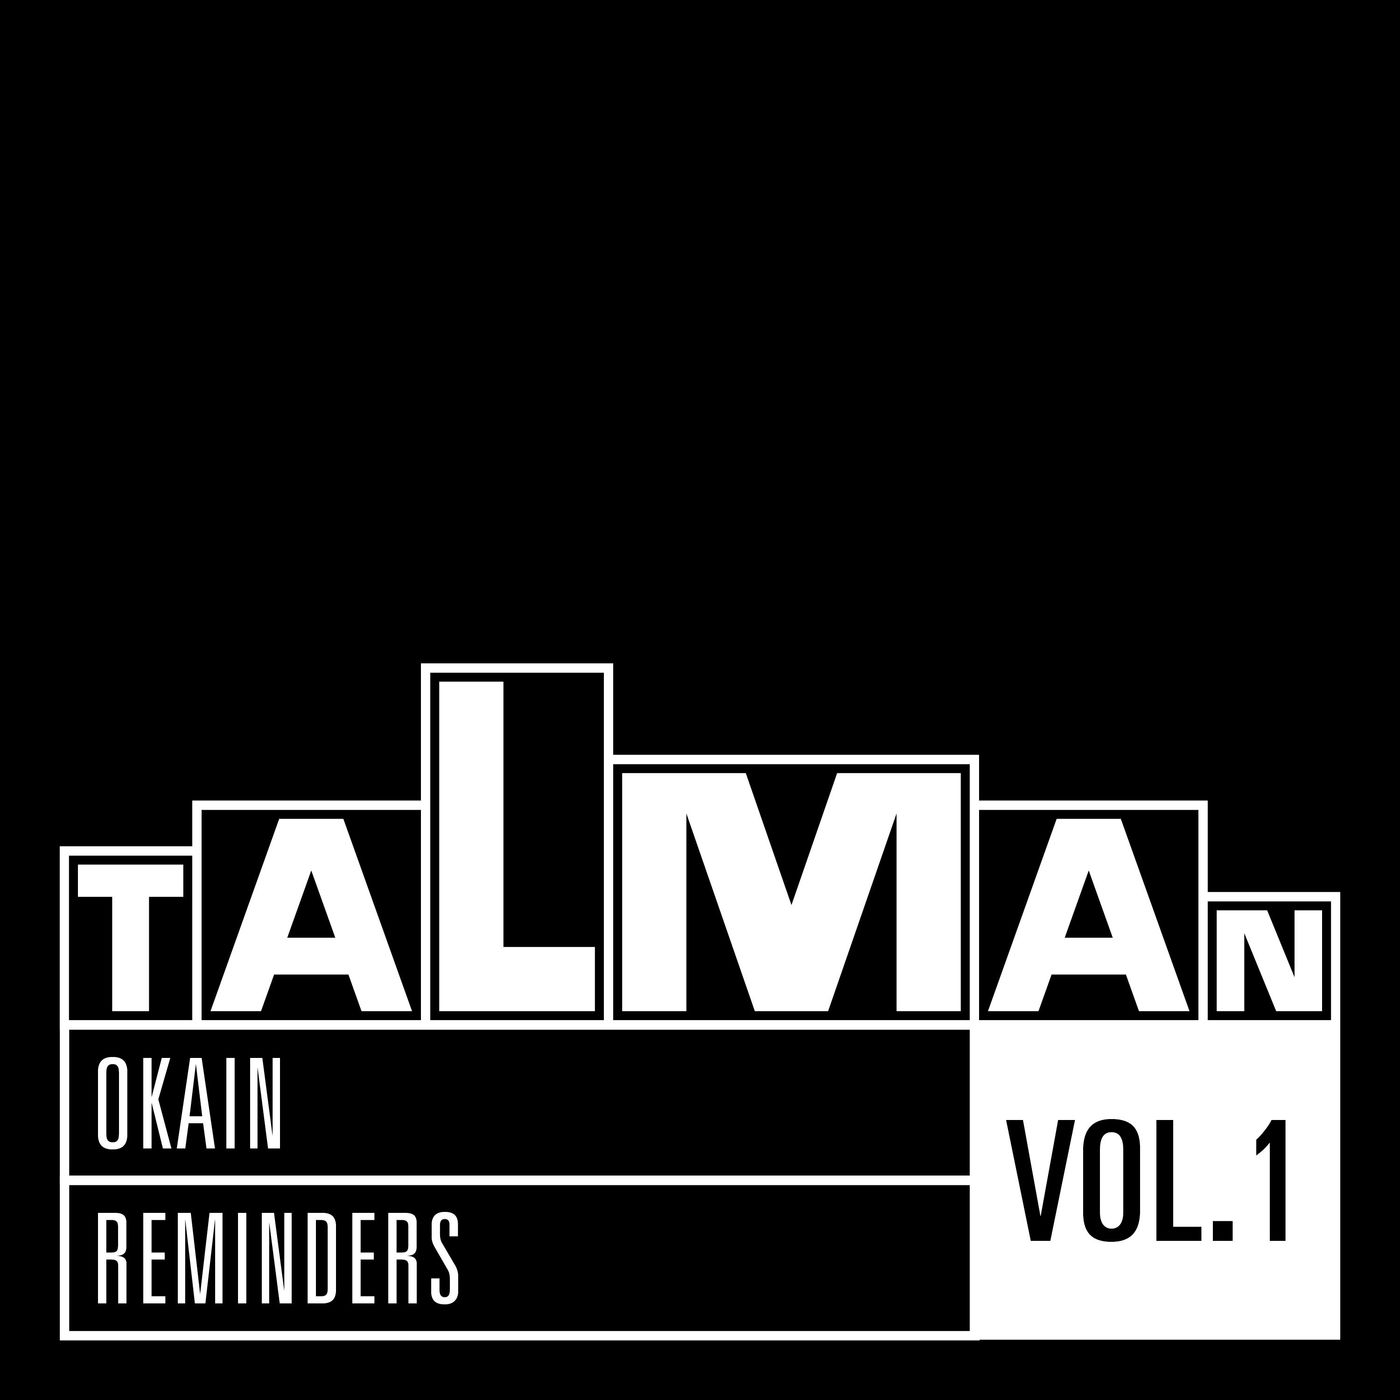 Okain - Reminders, Vol. 1 / Talman Records